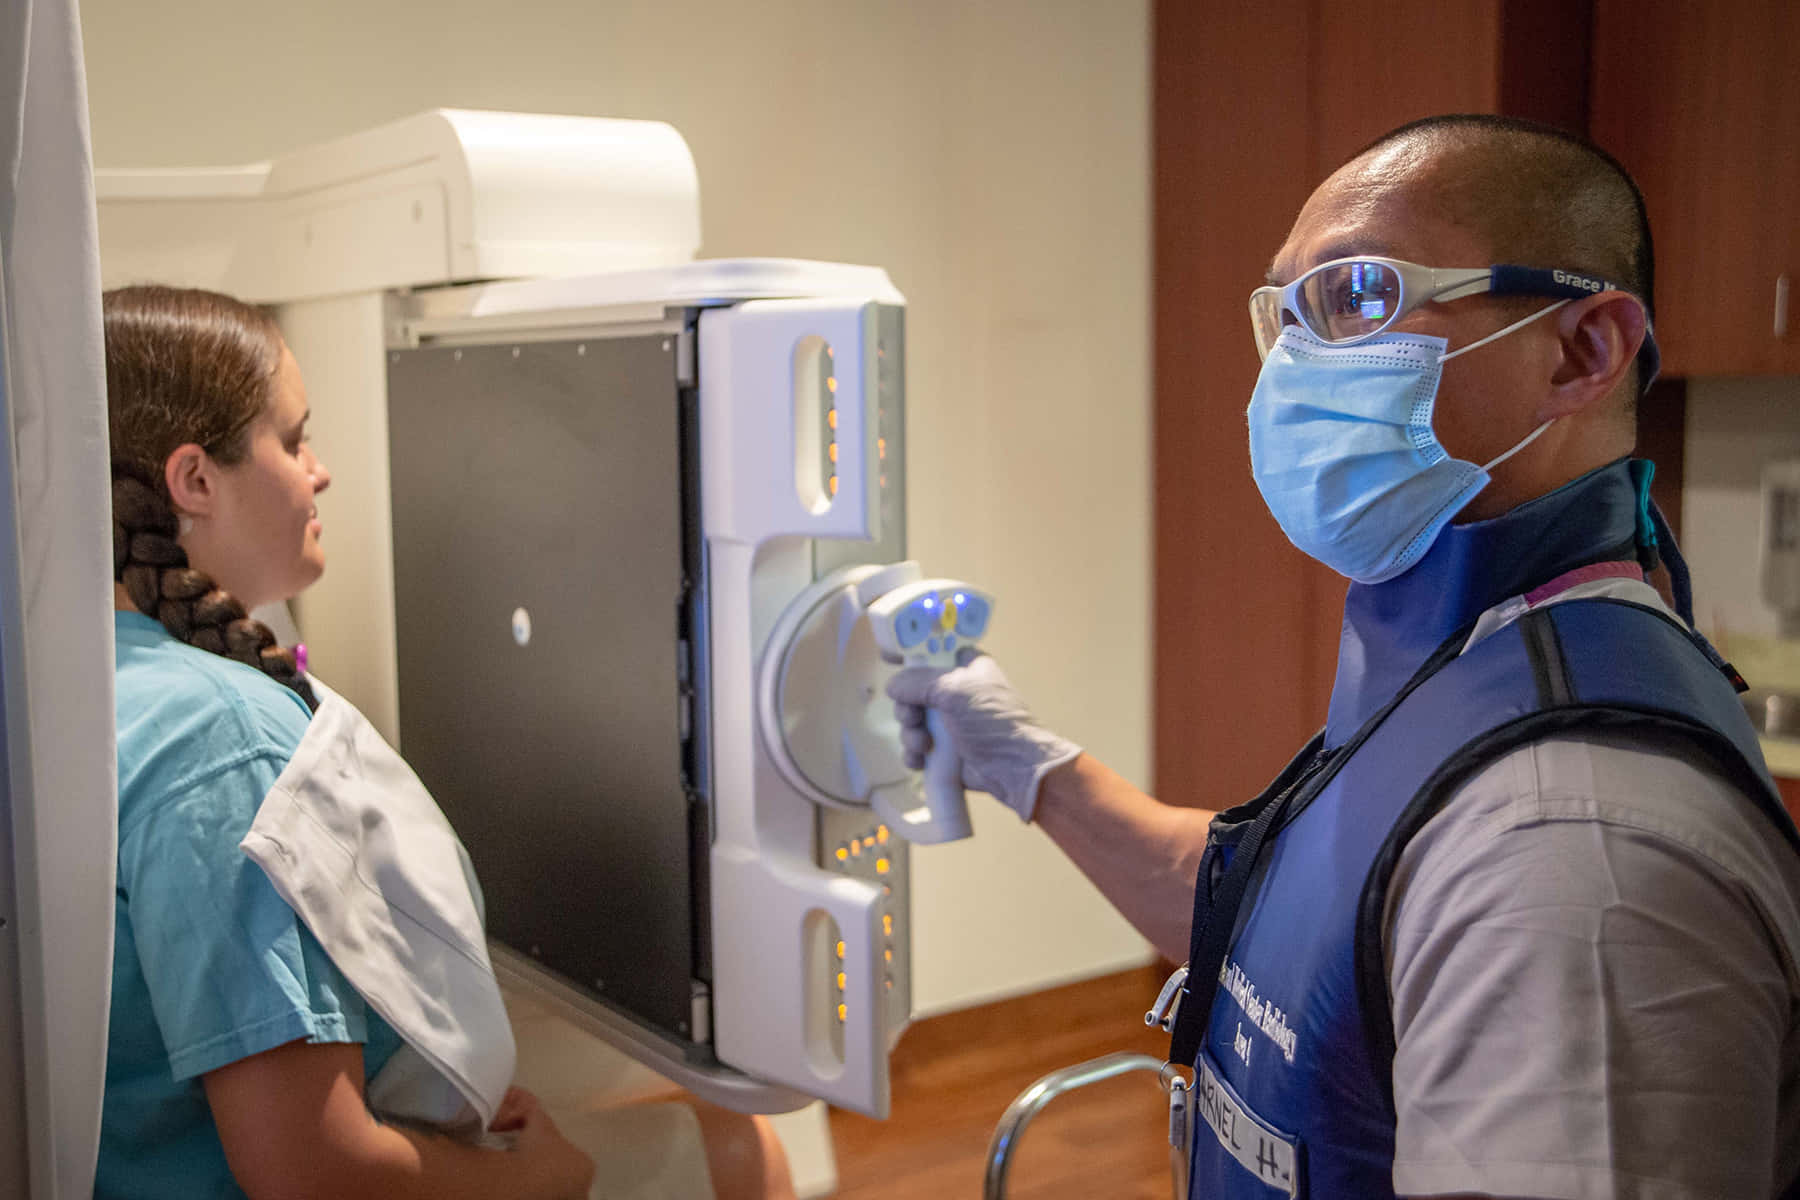 Einekrankenschwester Mit Maske Und Handschuhen Untersucht Eine Röntgenmaschine.